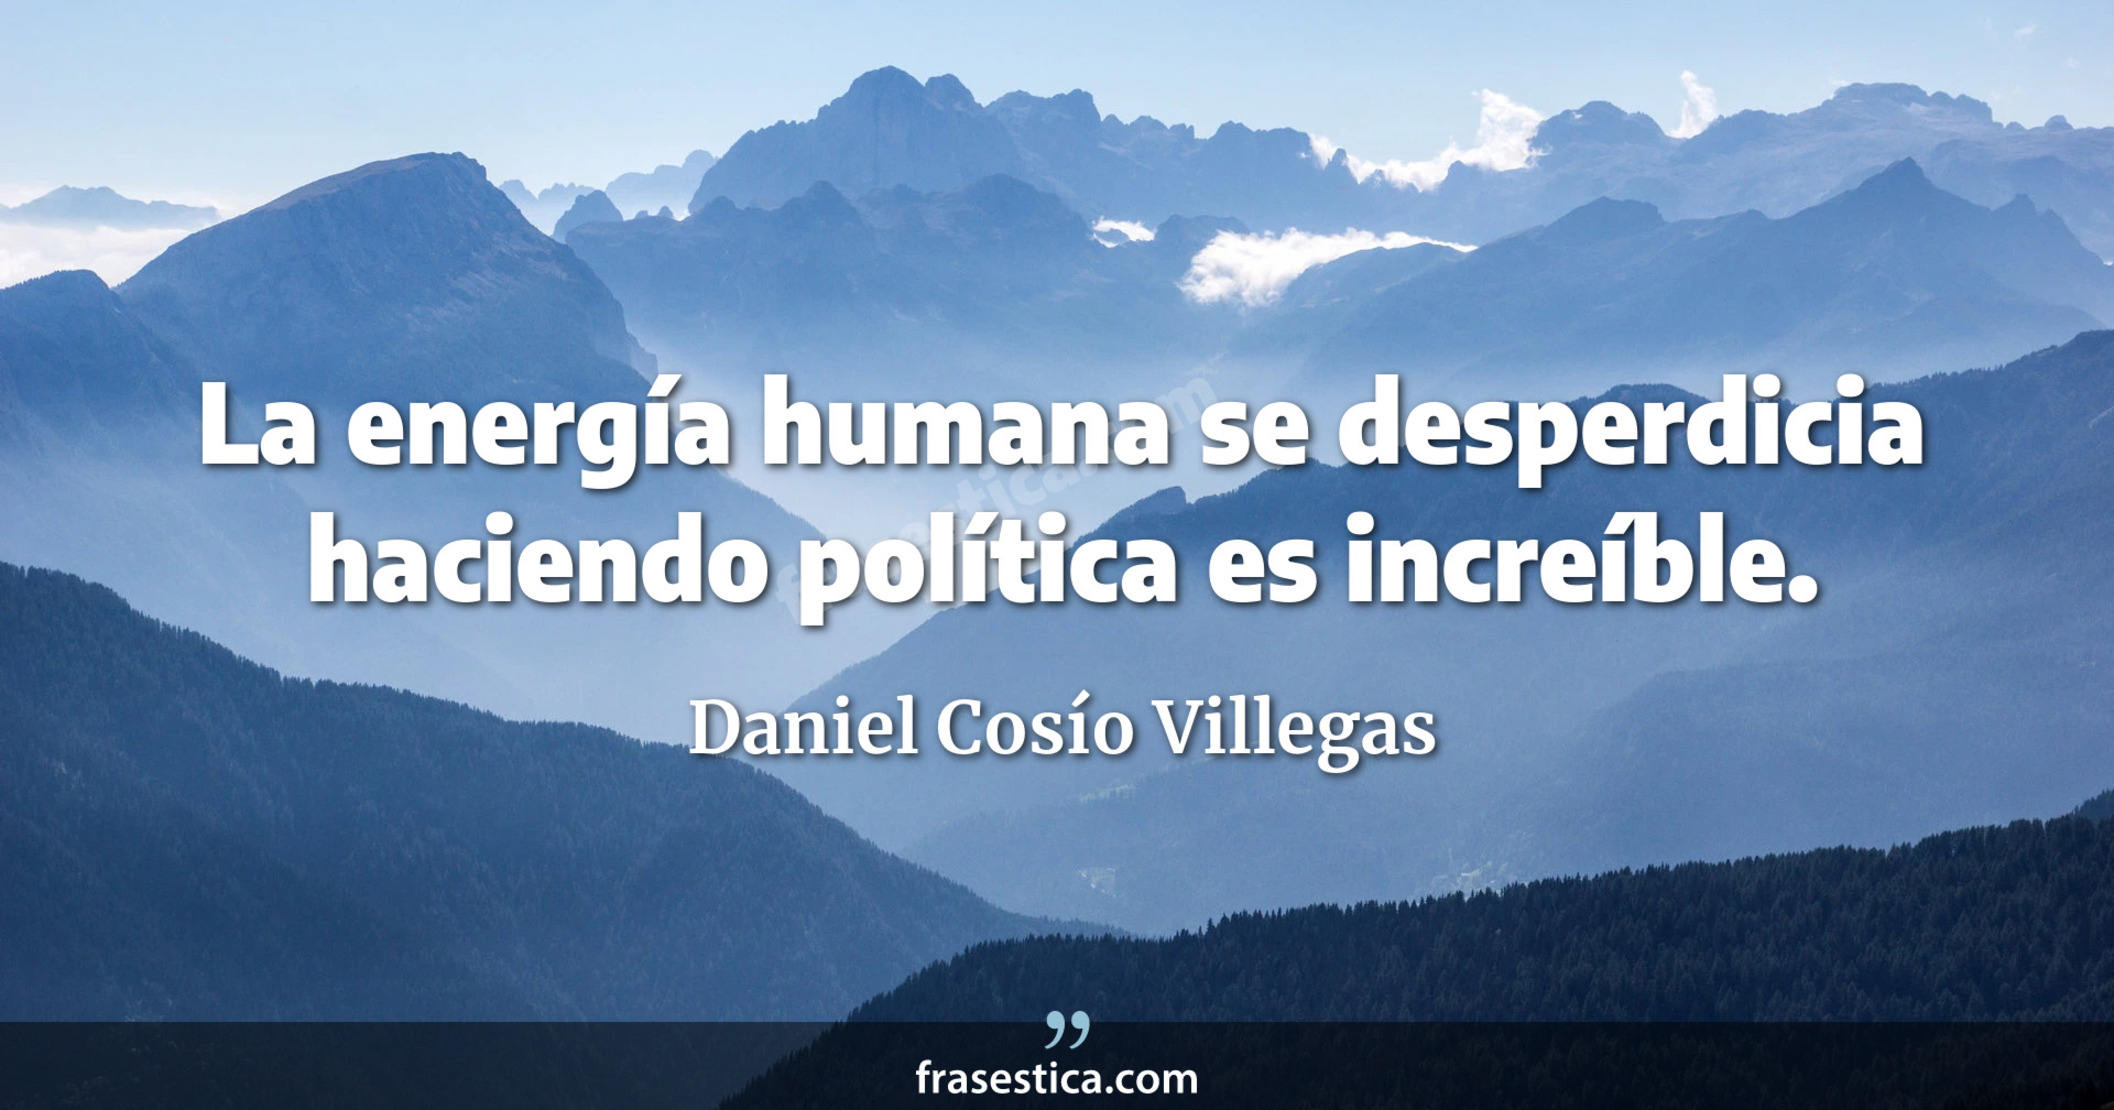 La energía humana se desperdicia haciendo política es increíble. - Daniel Cosío Villegas